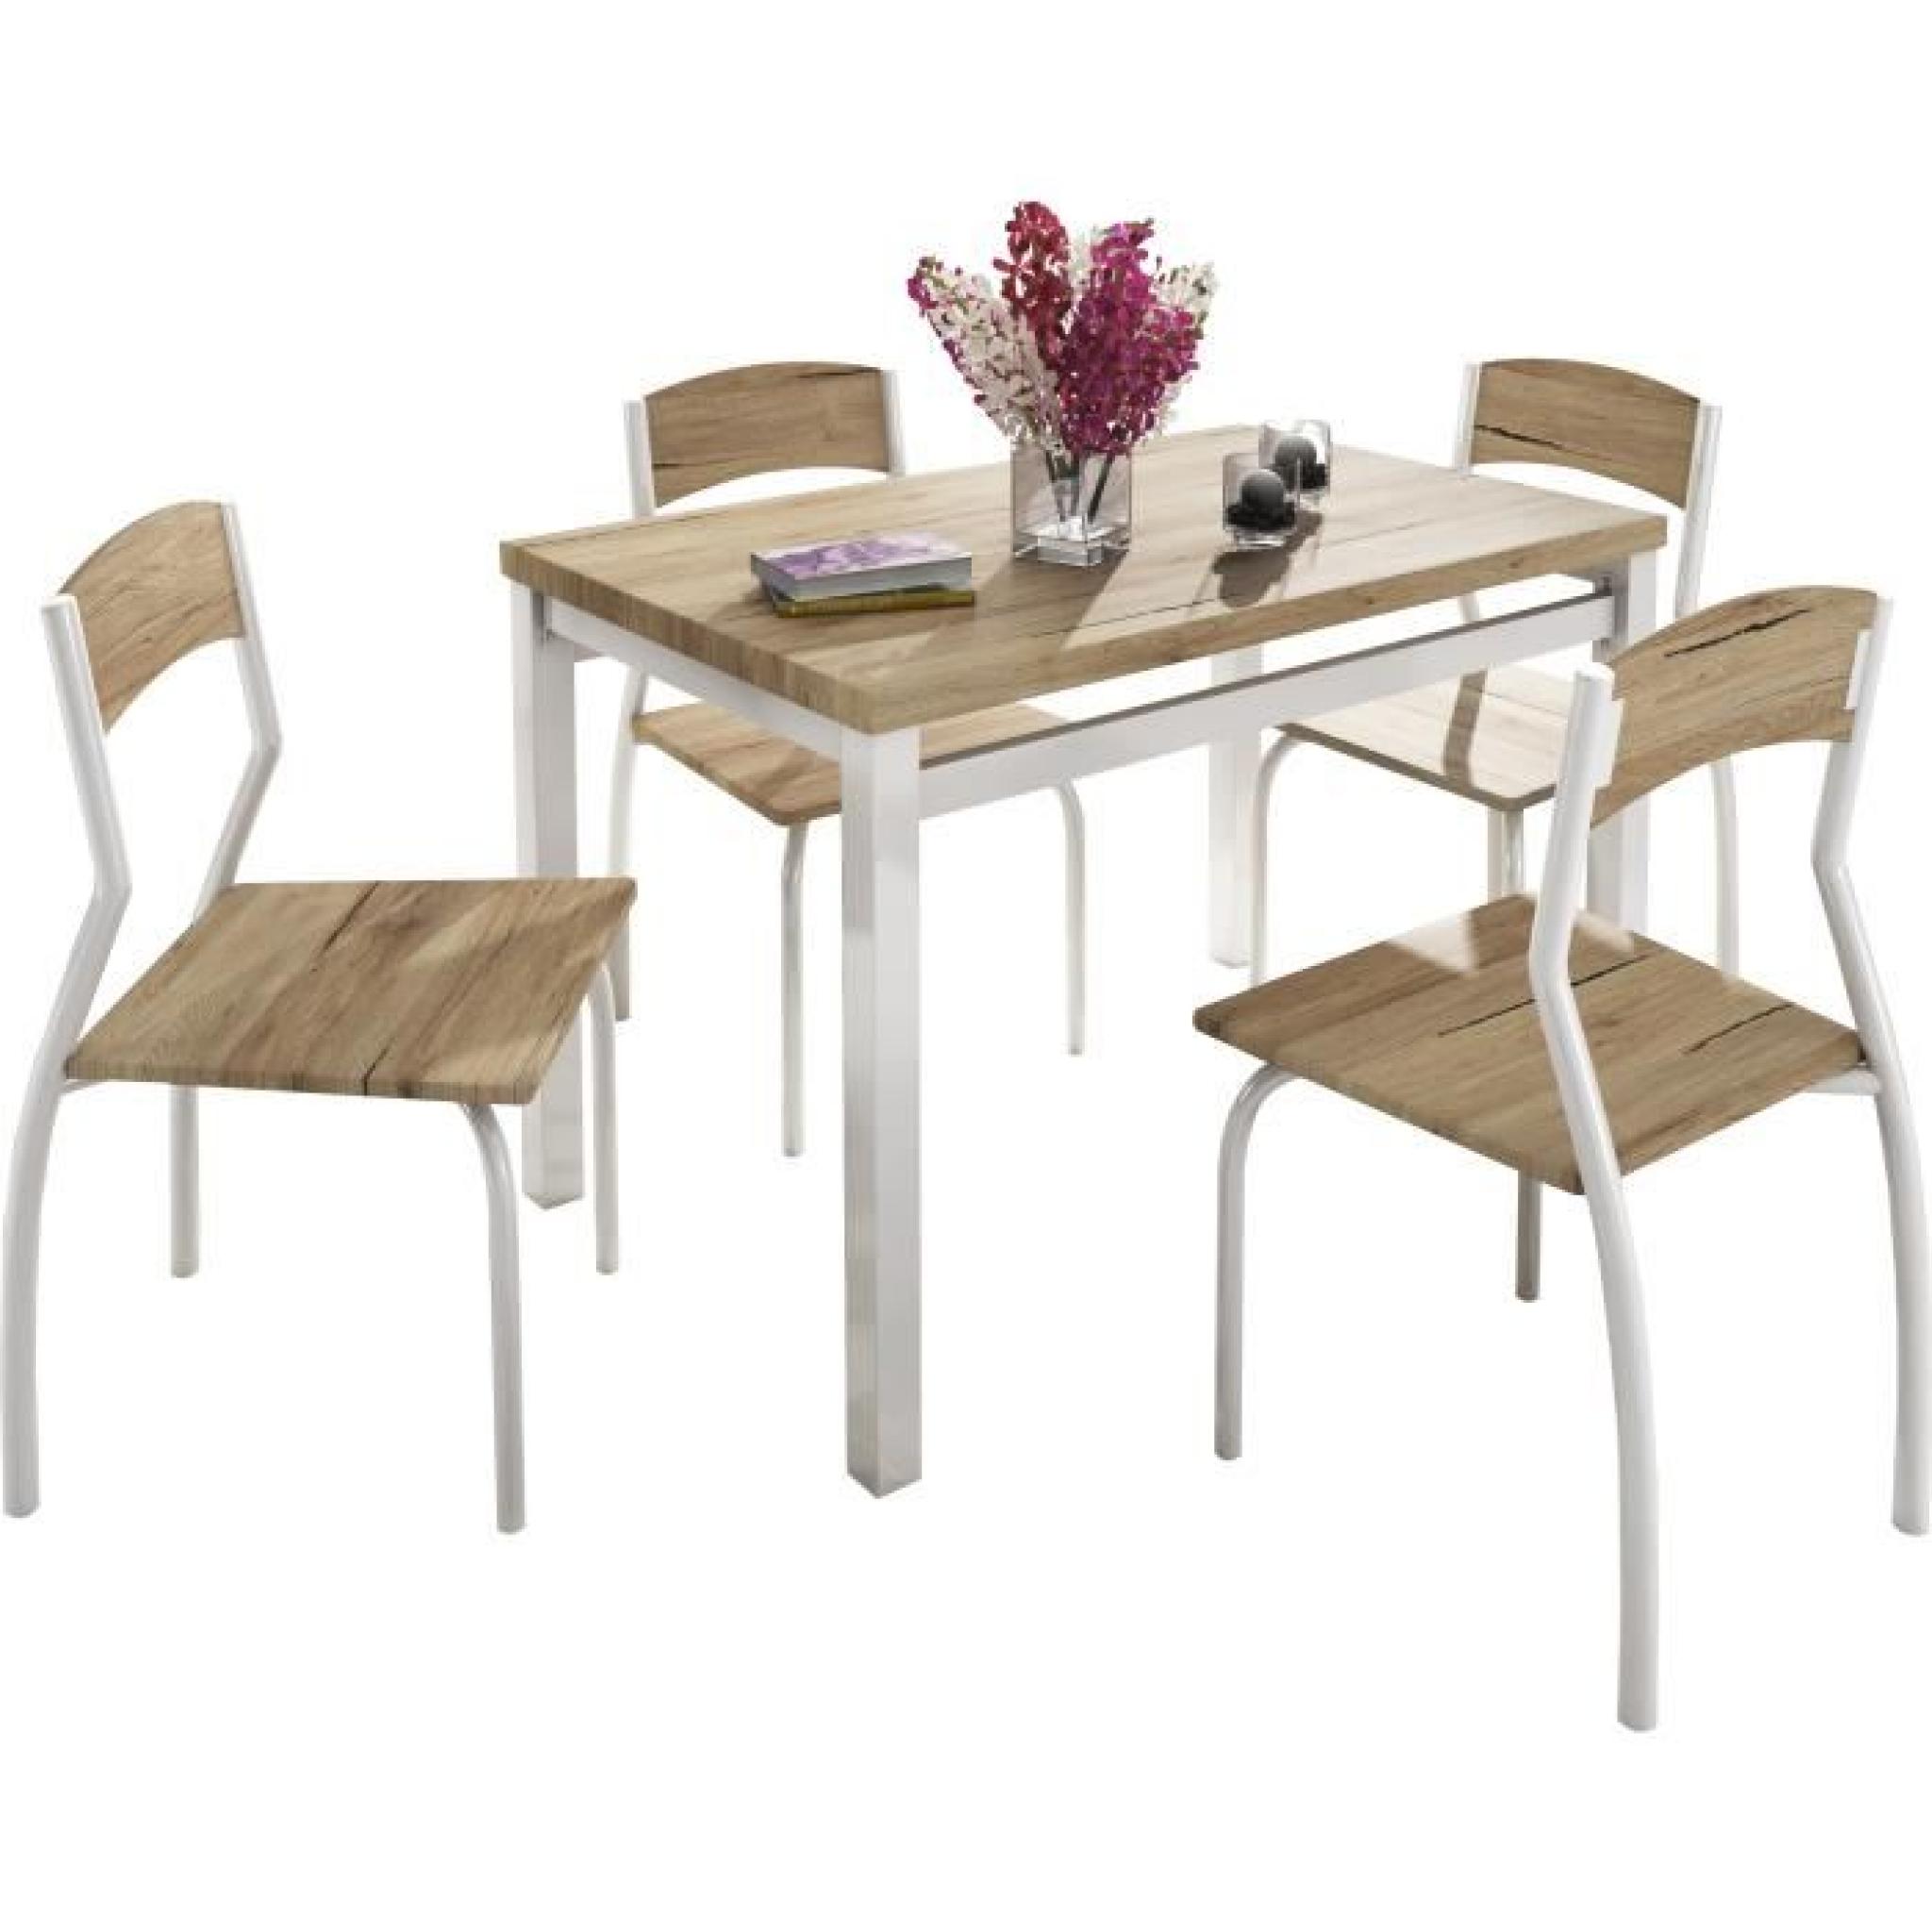 Ensemble d’une table rectangulaire 110 cm et 4 chaises assorties coloris chêne clair